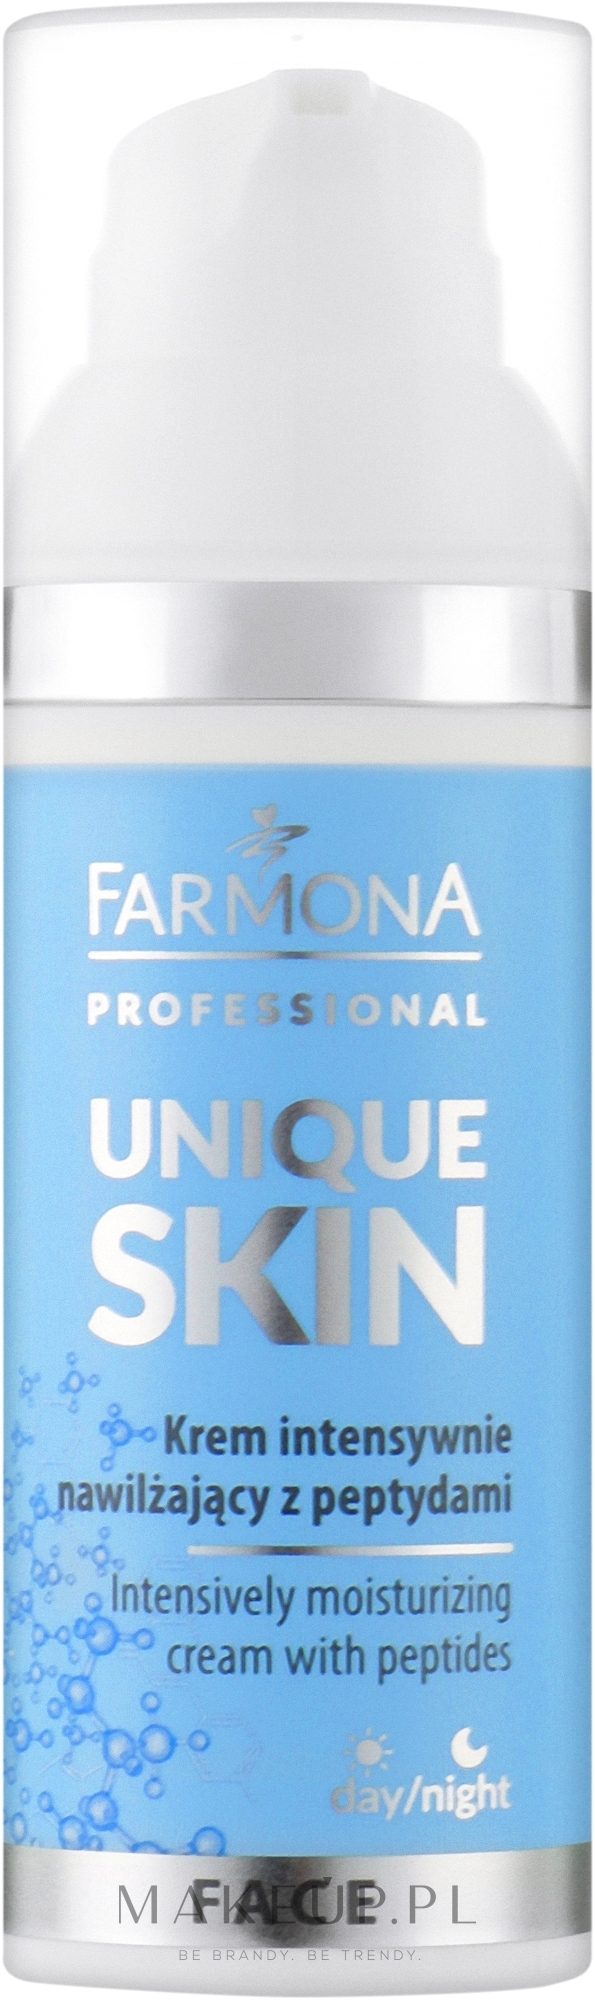 Peptydowy krem intensywnie nawilżający - Farmona Professional Unique Skin Intensively Moisturizing Cream With Peptides — Zdjęcie 50 ml